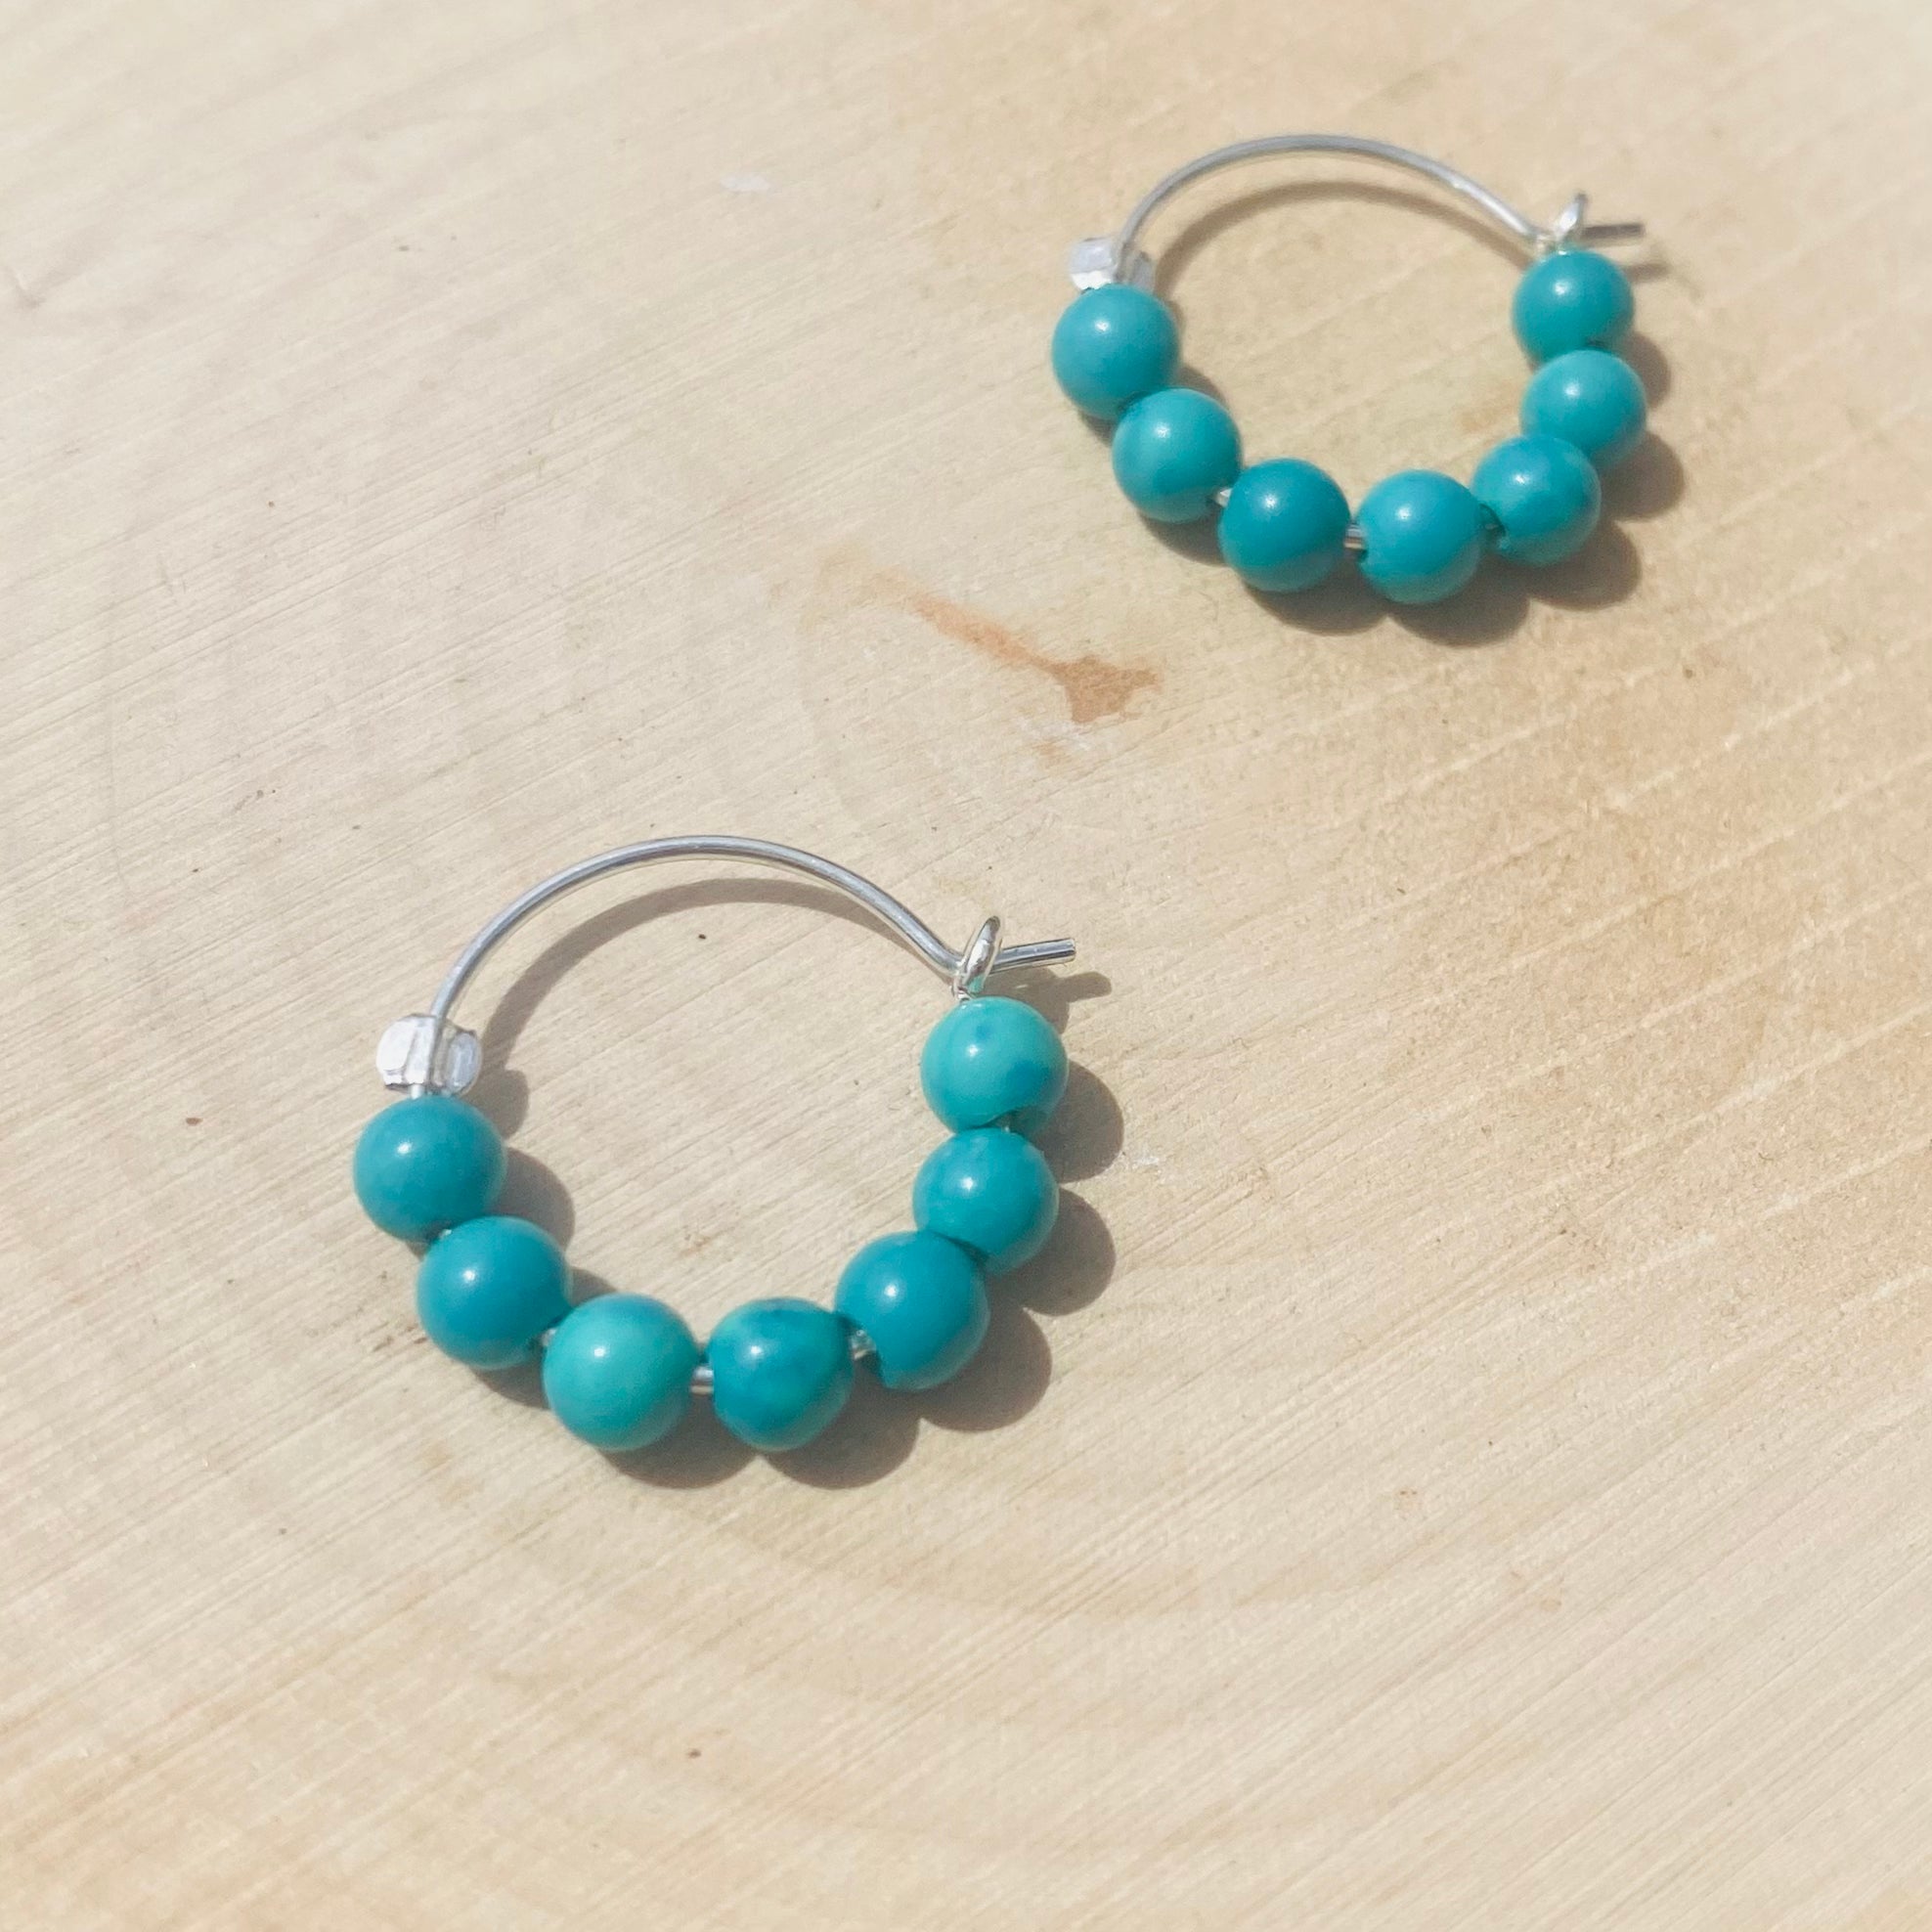 Turquoise Hoop Earrings - Small Sterling Silver Huggies - December Birthstone